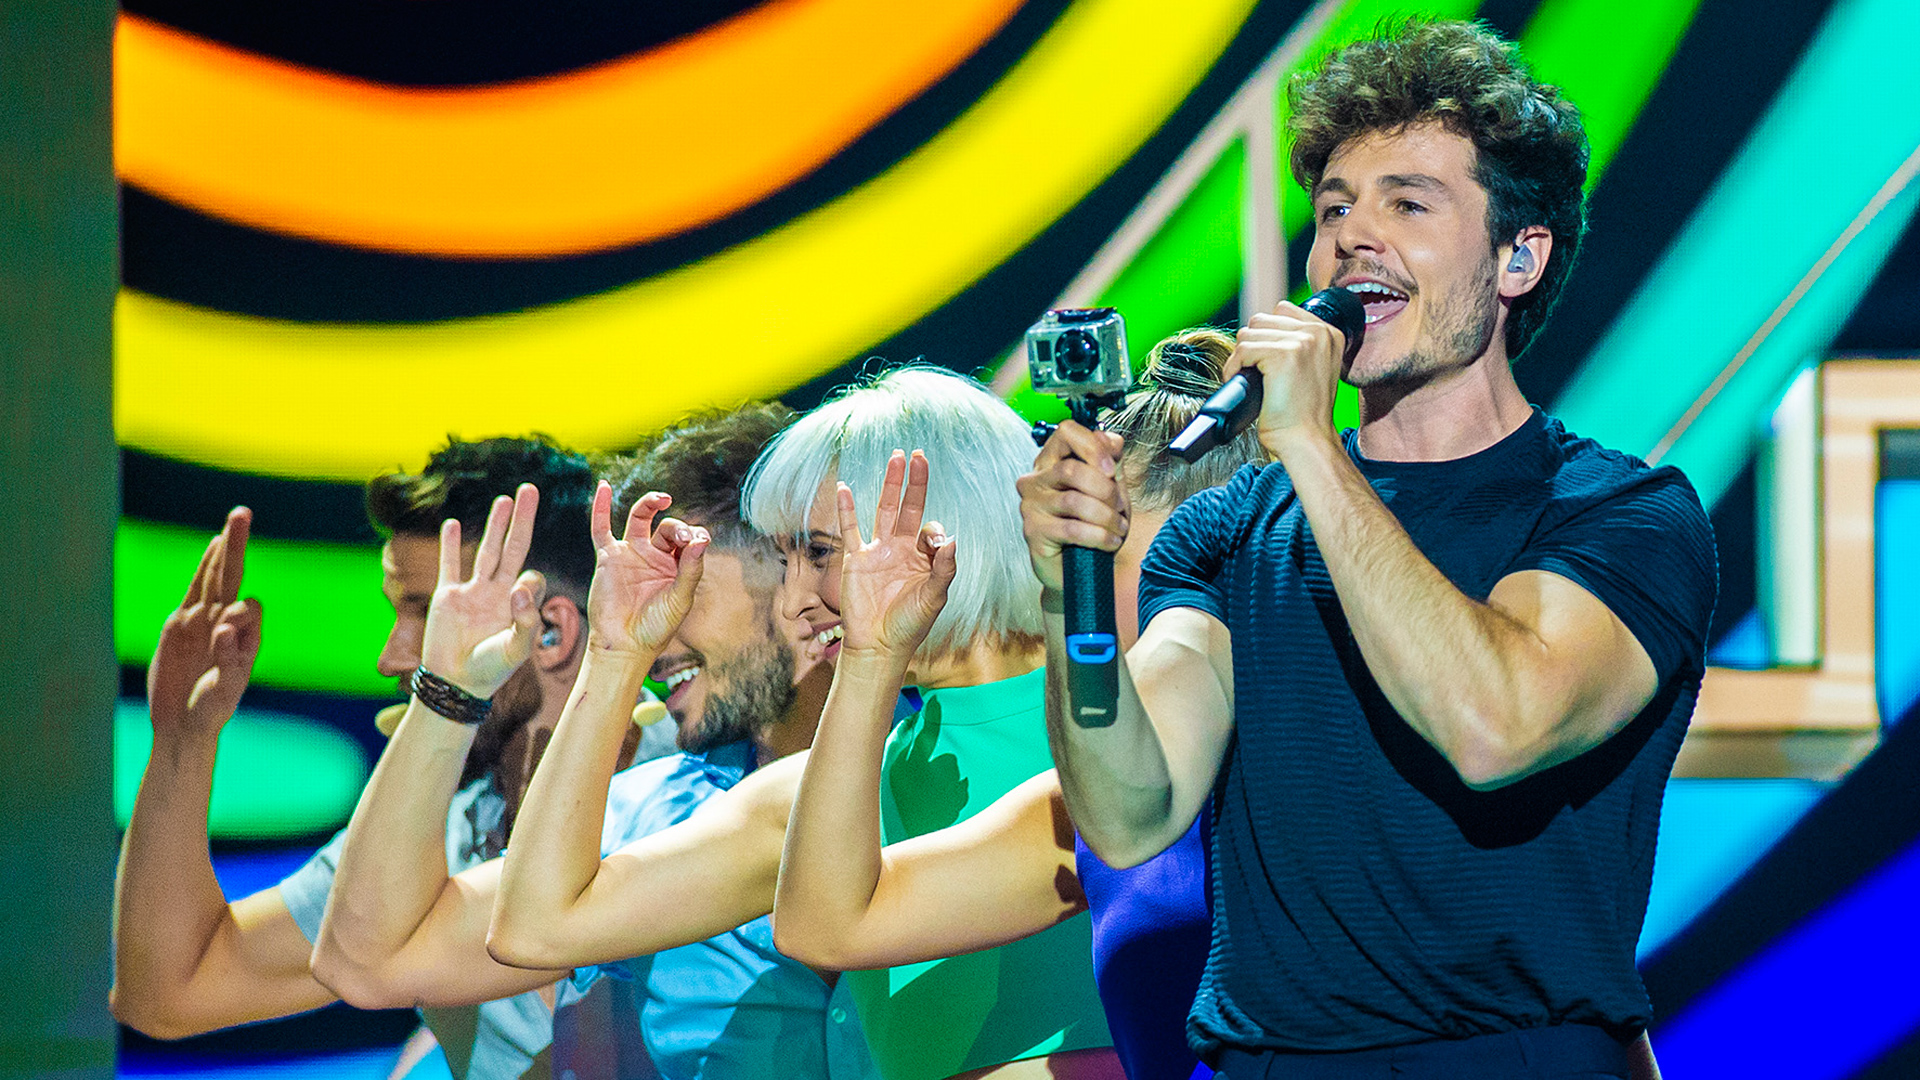 Miki sorprende en Eurovisión 2019 con los ensayos de 'La Venda' 1